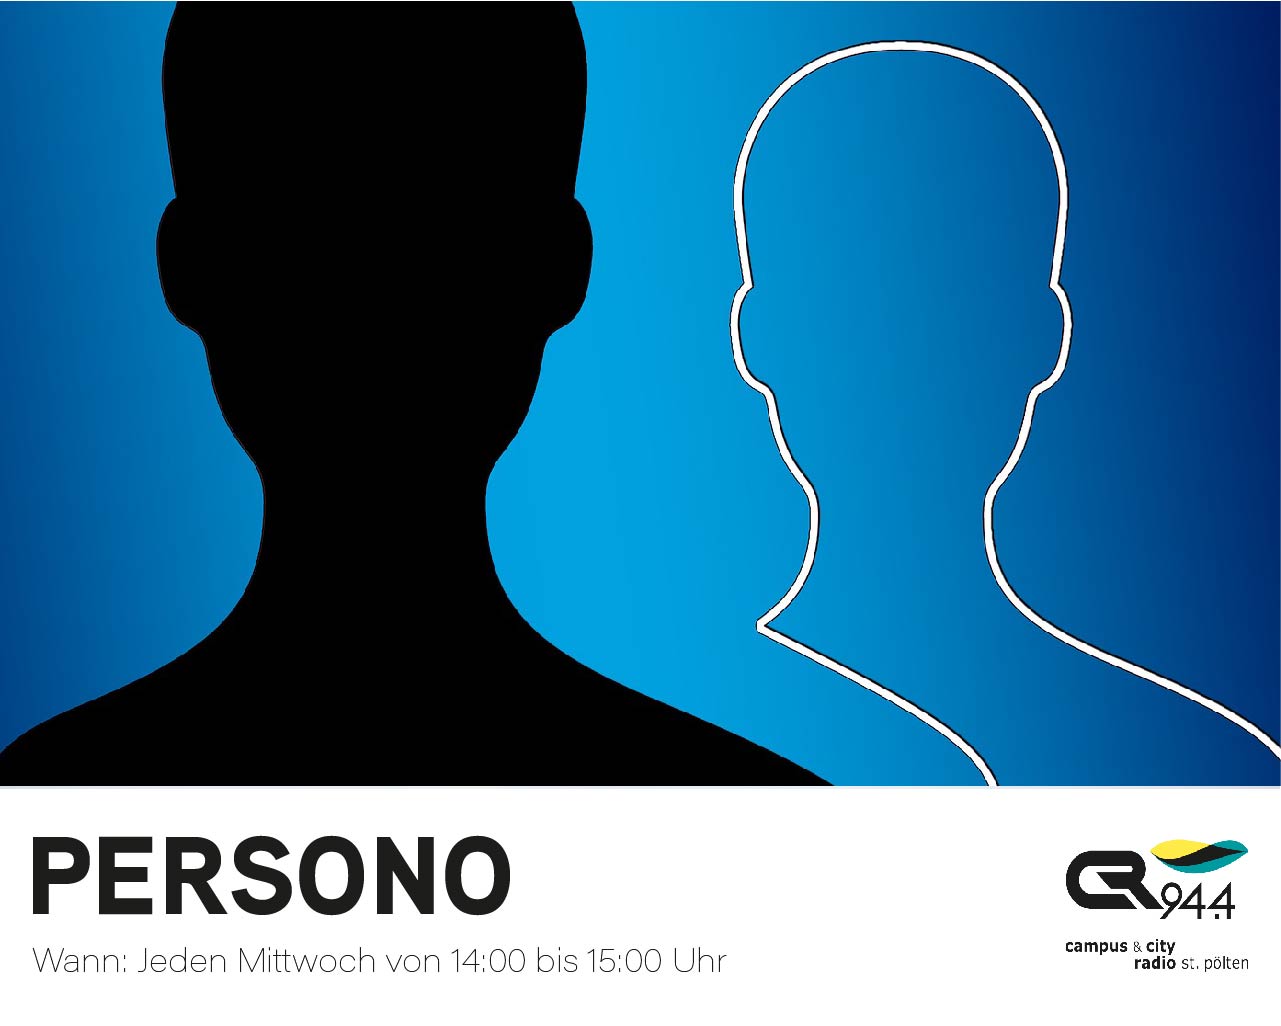 Persono – "Grund" genug, um ins Gespräch zu kommen